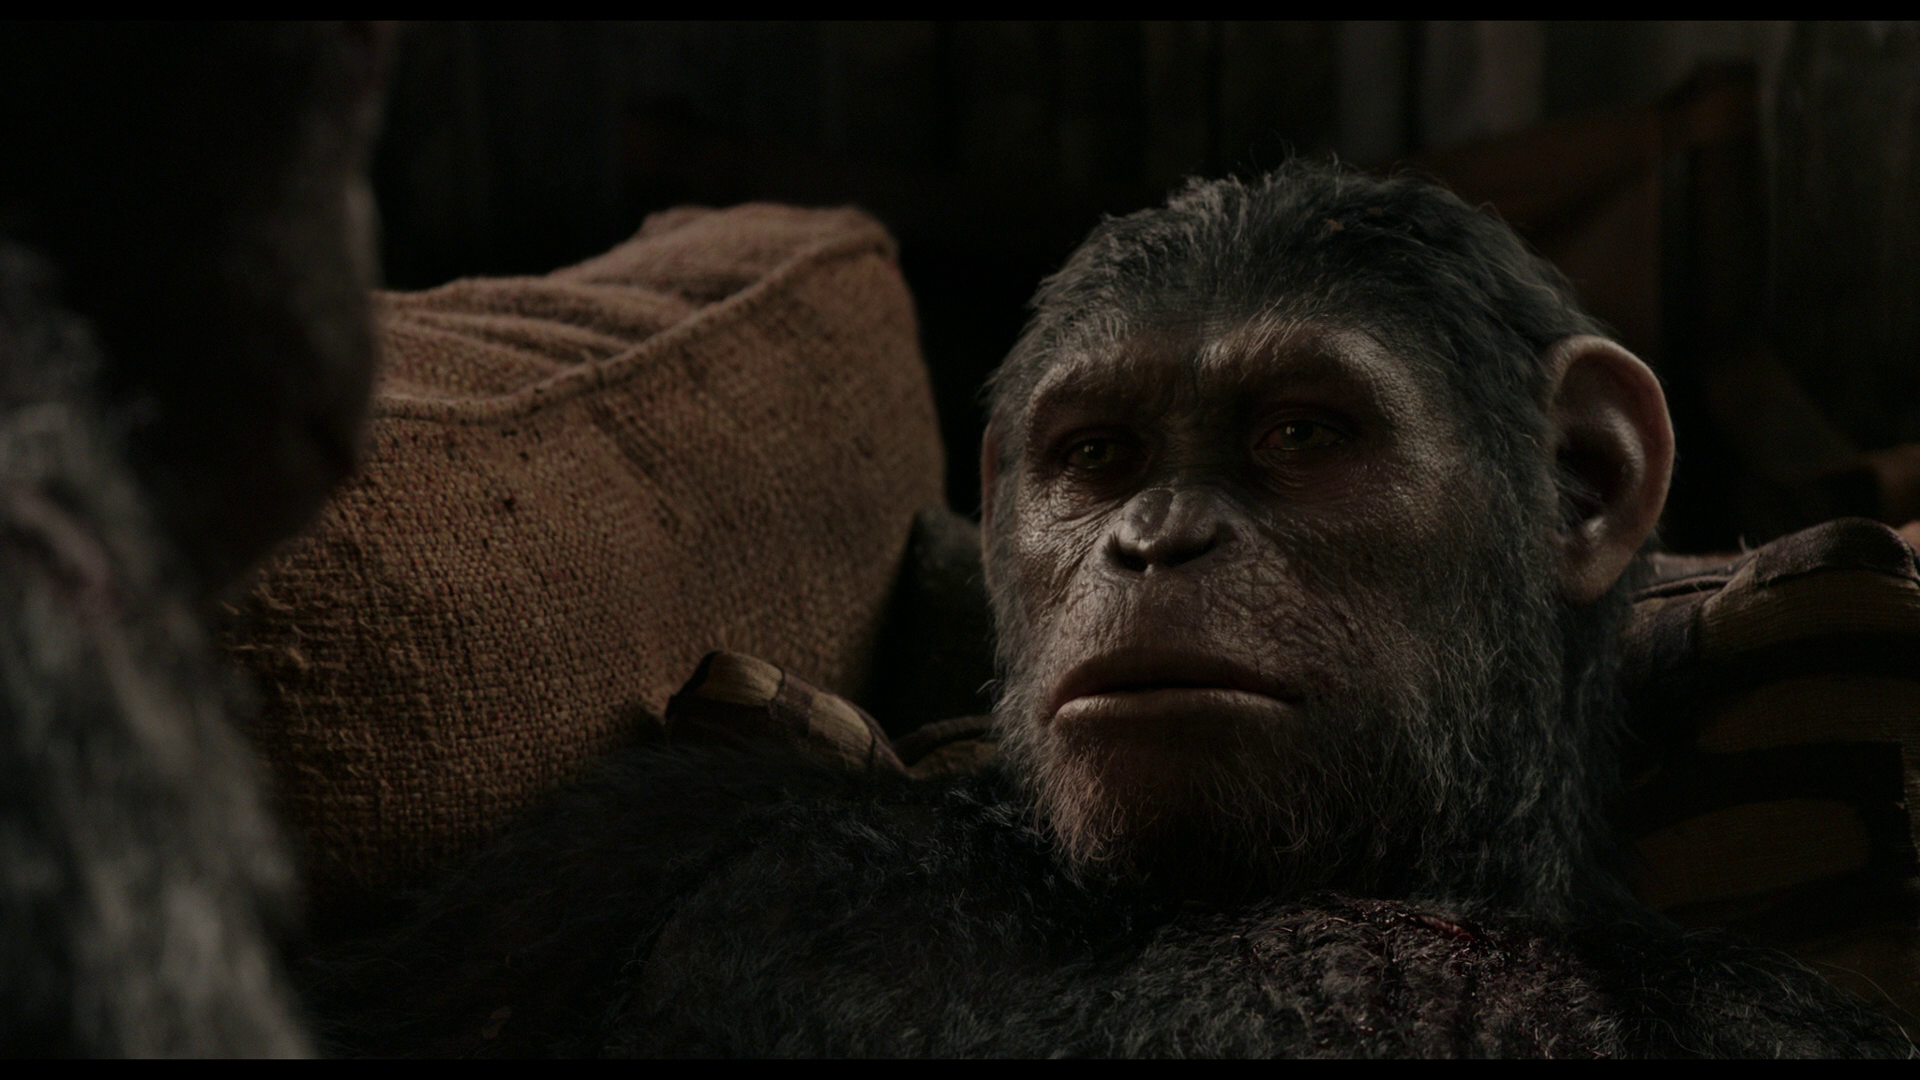 Планета обезьян революция 2014 субтитры обезьян. Планета обезьян: революция (2014). Восстание планеты обезьян 2.